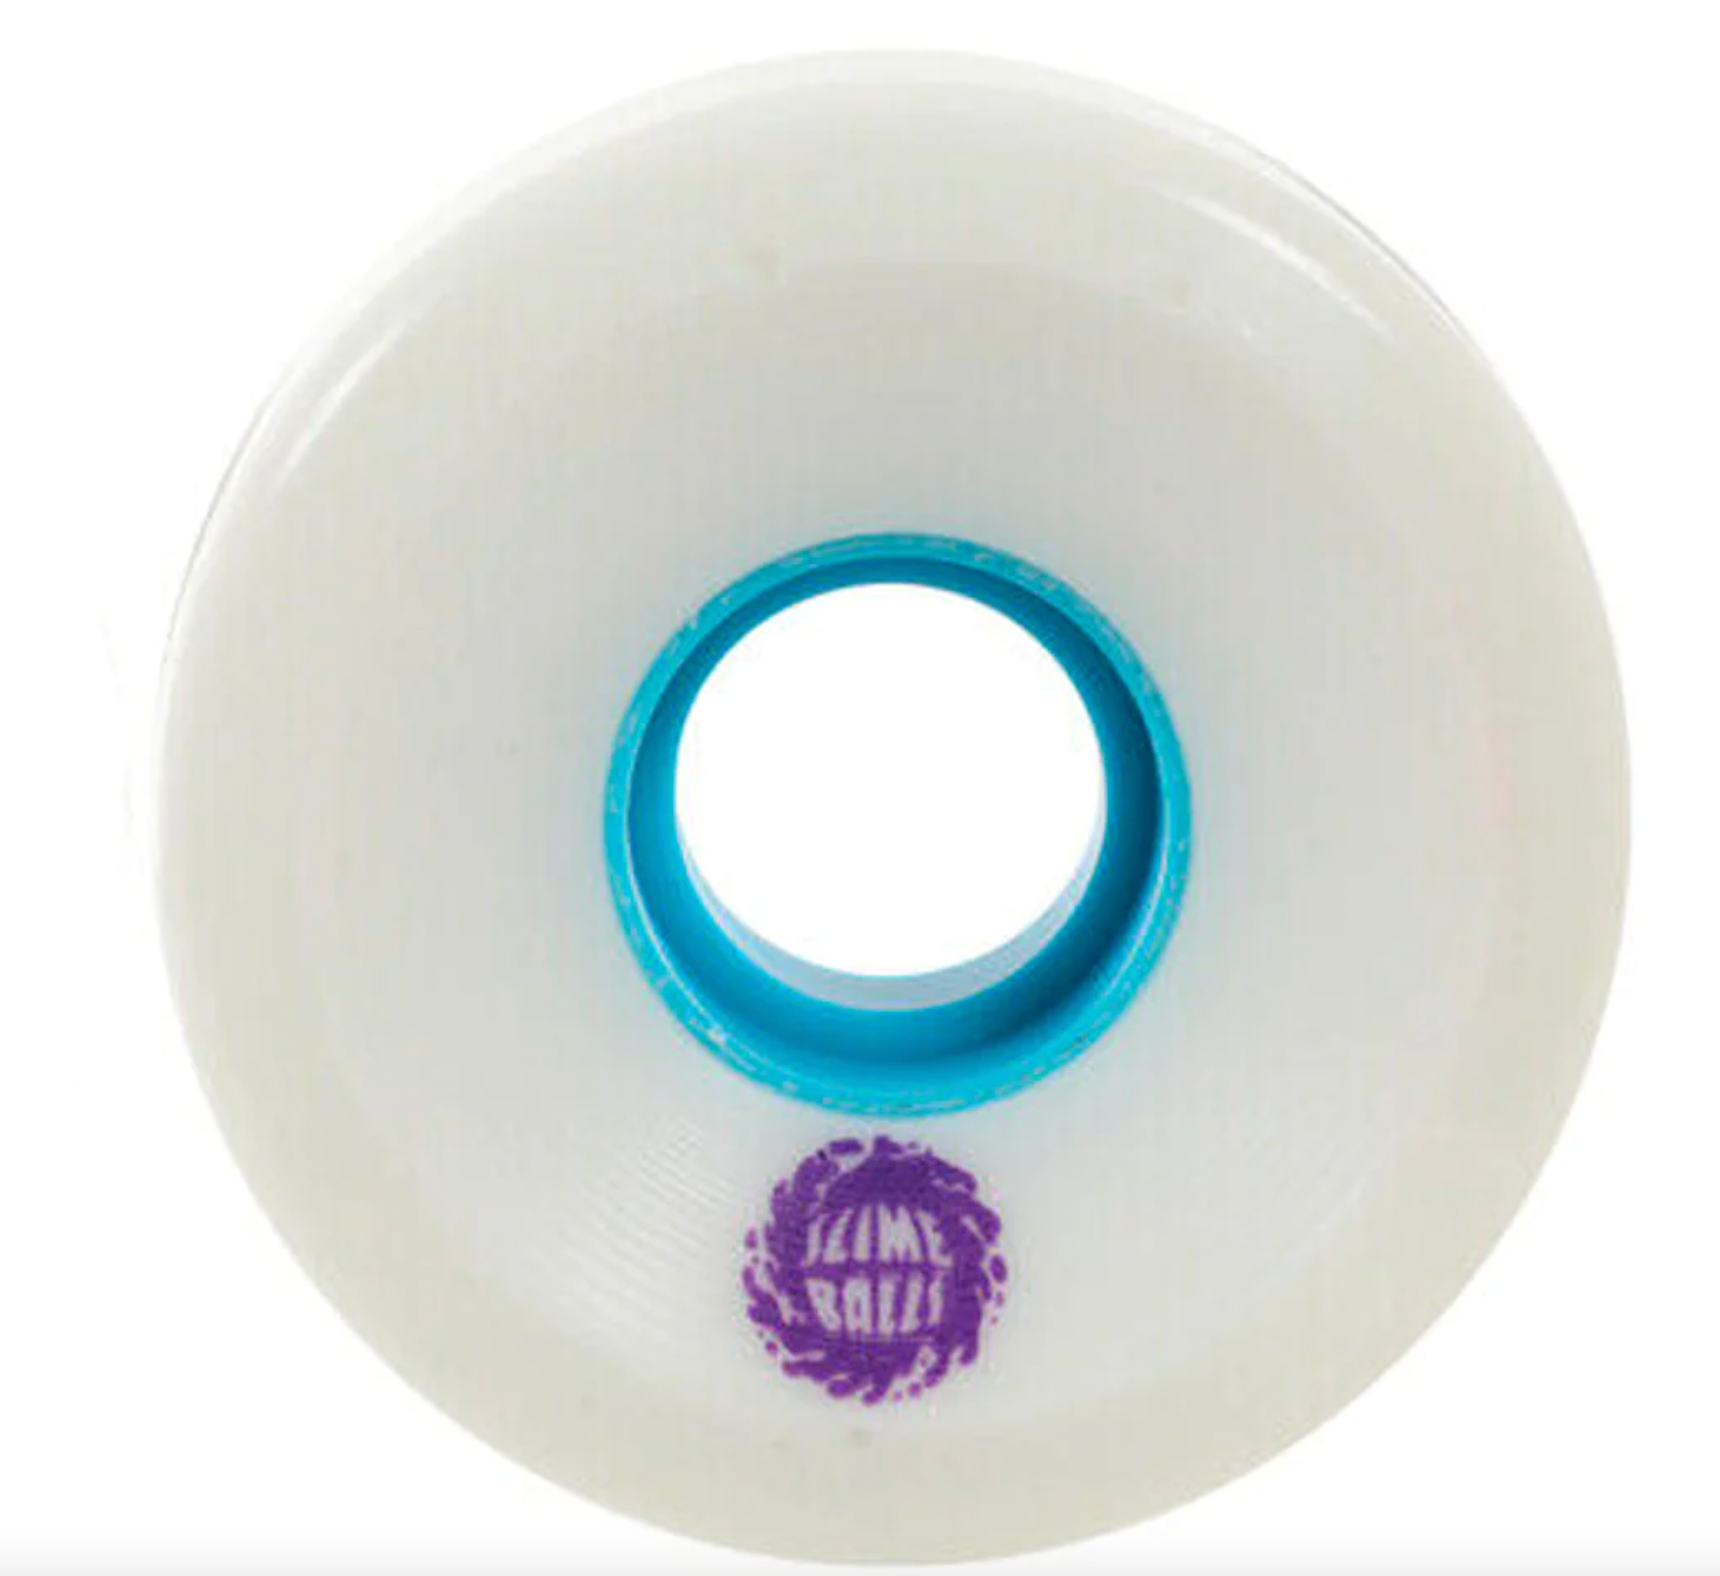 Slime Balls Wheels OG Slime Skateboard Wheels 78a White Teal 60mm